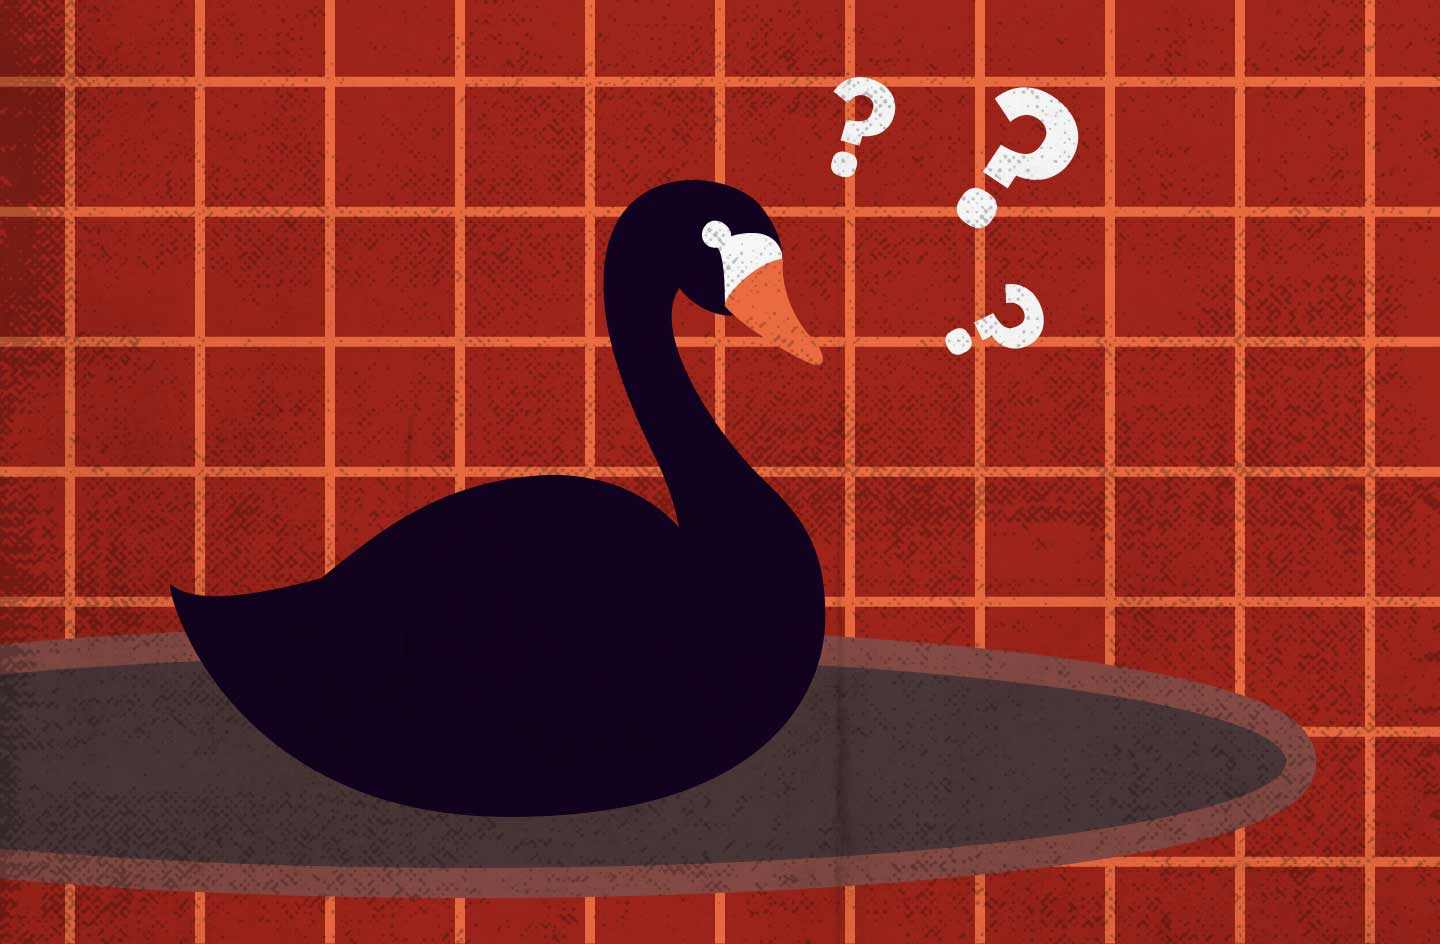 La teoria del cisne negro